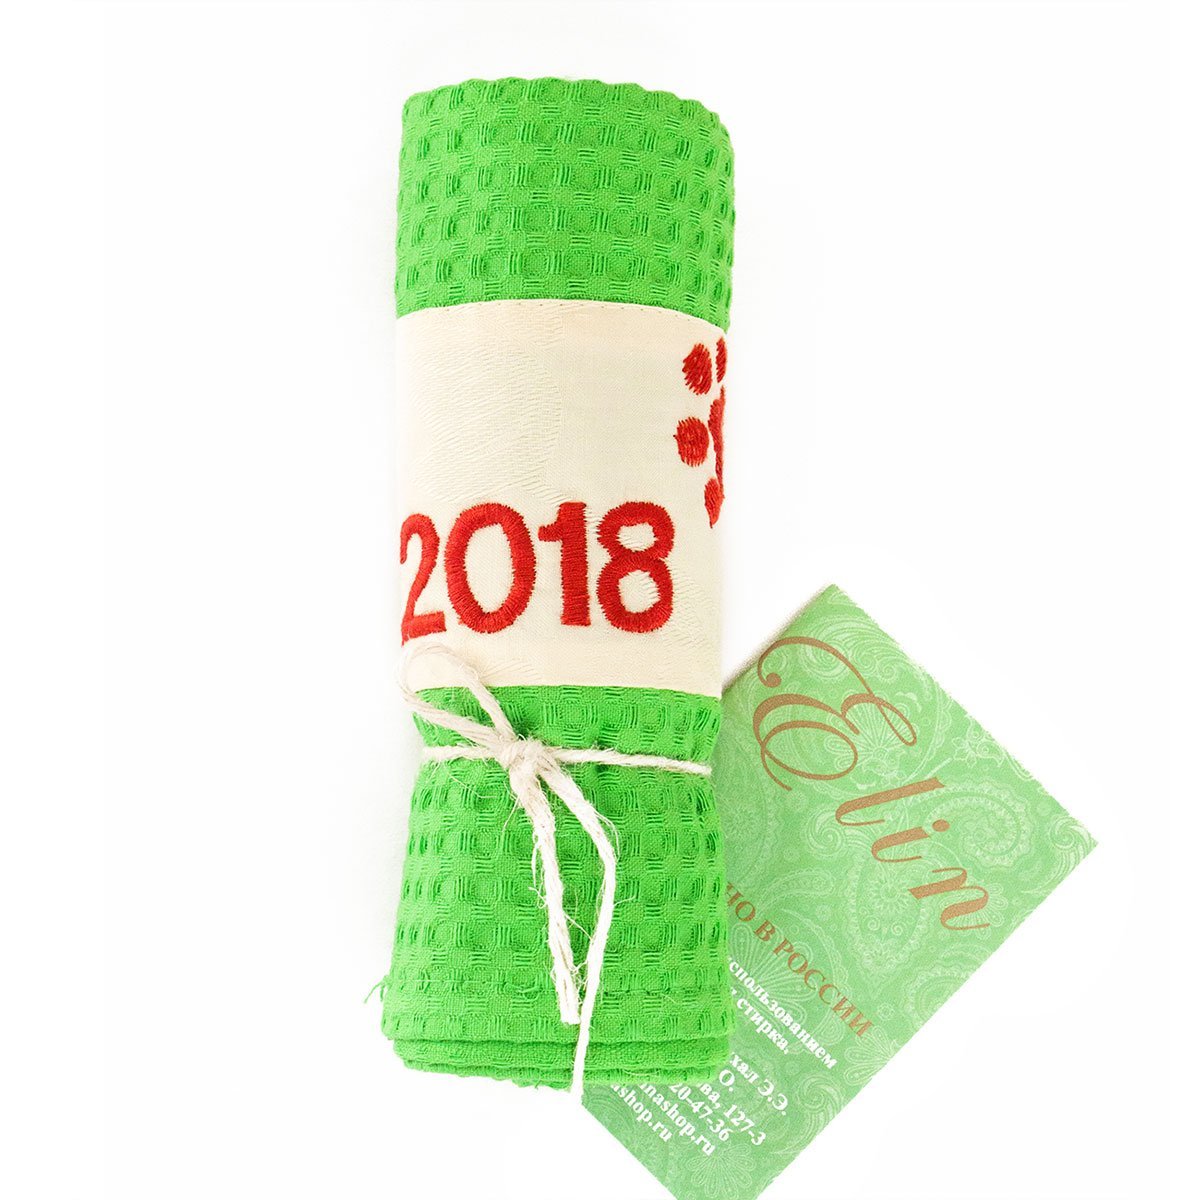 Полотенце вафельное с вышивкой 2018 Elin рис. 1